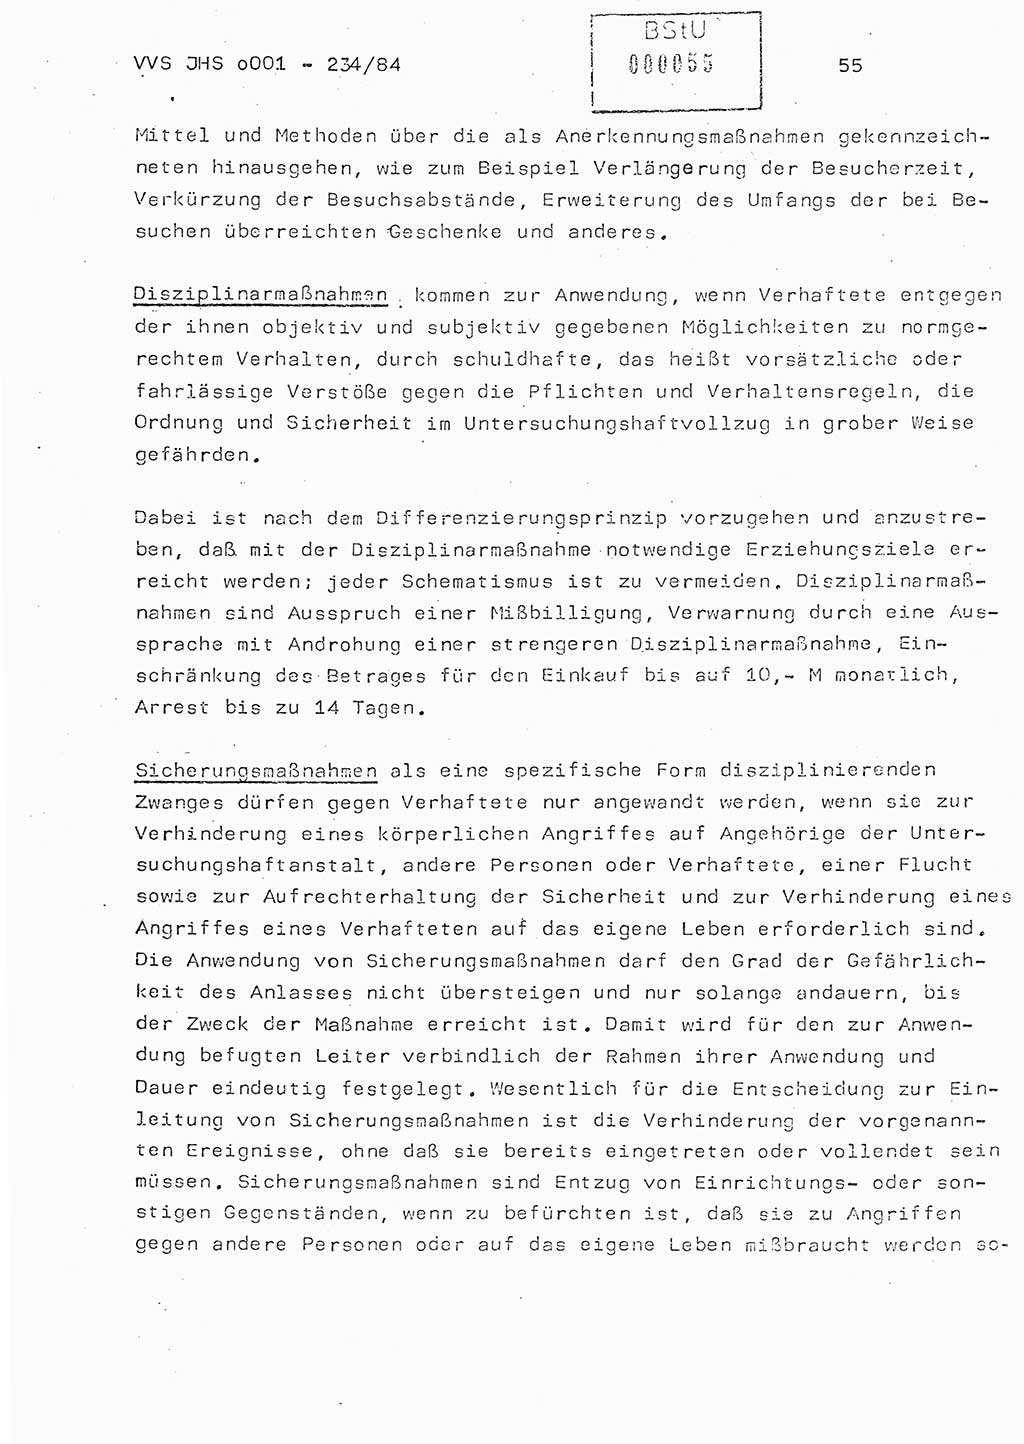 Dissertation Oberst Siegfried Rataizick (Abt. ⅩⅣ), Oberstleutnant Volkmar Heinz (Abt. ⅩⅣ), Oberstleutnant Werner Stein (HA Ⅸ), Hauptmann Heinz Conrad (JHS), Ministerium für Staatssicherheit (MfS) [Deutsche Demokratische Republik (DDR)], Juristische Hochschule (JHS), Vertrauliche Verschlußsache (VVS) o001-234/84, Potsdam 1984, Seite 55 (Diss. MfS DDR JHS VVS o001-234/84 1984, S. 55)